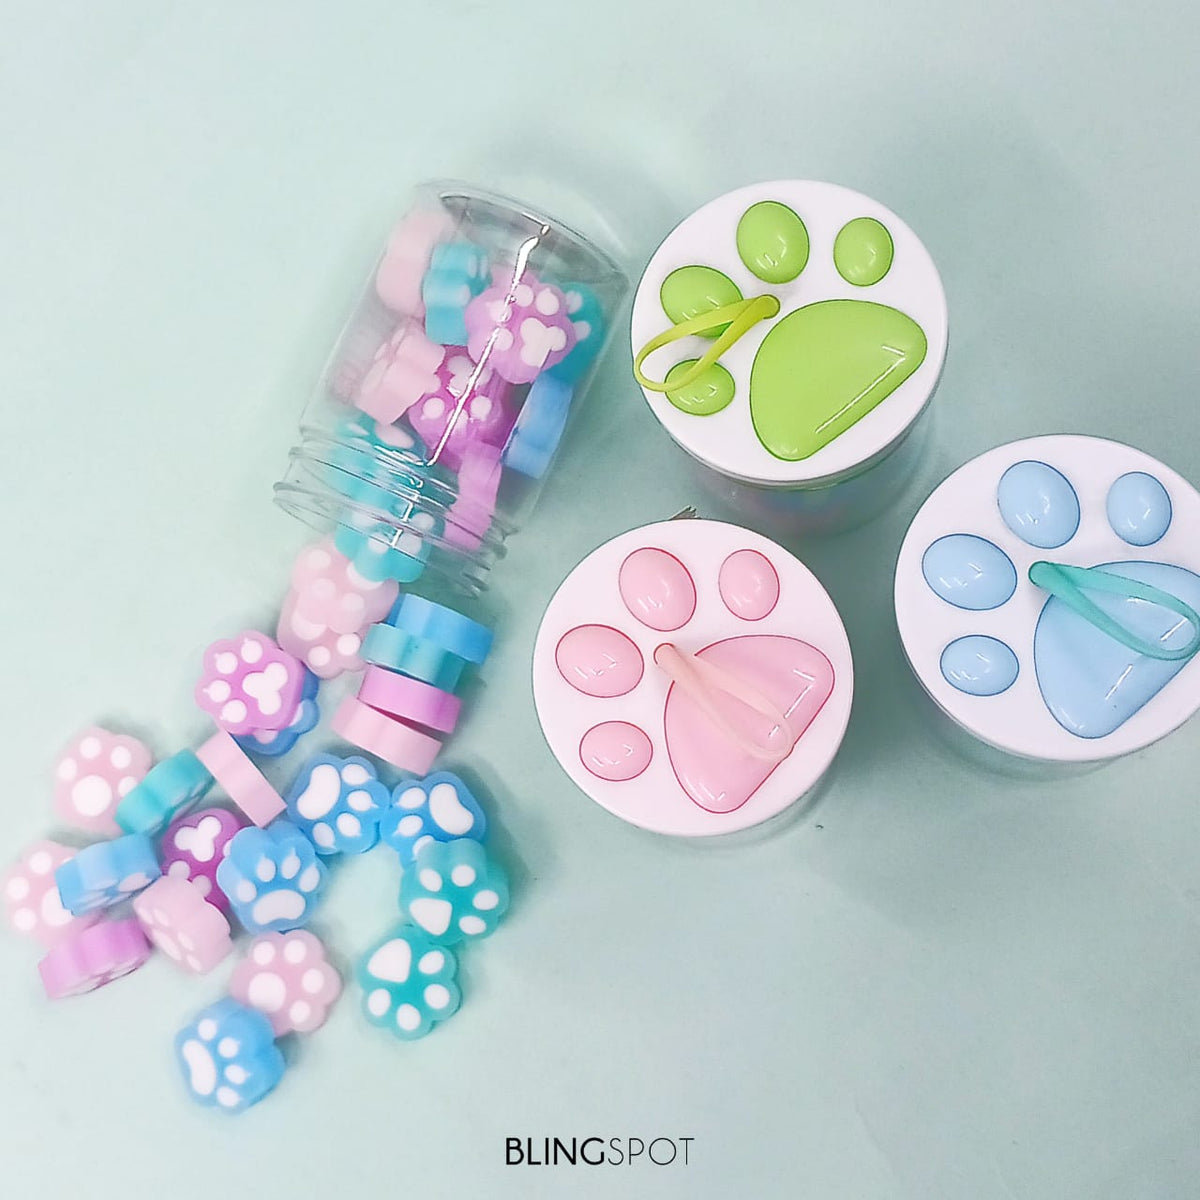 Cat Paw Pastels - Eraser Set Of 18